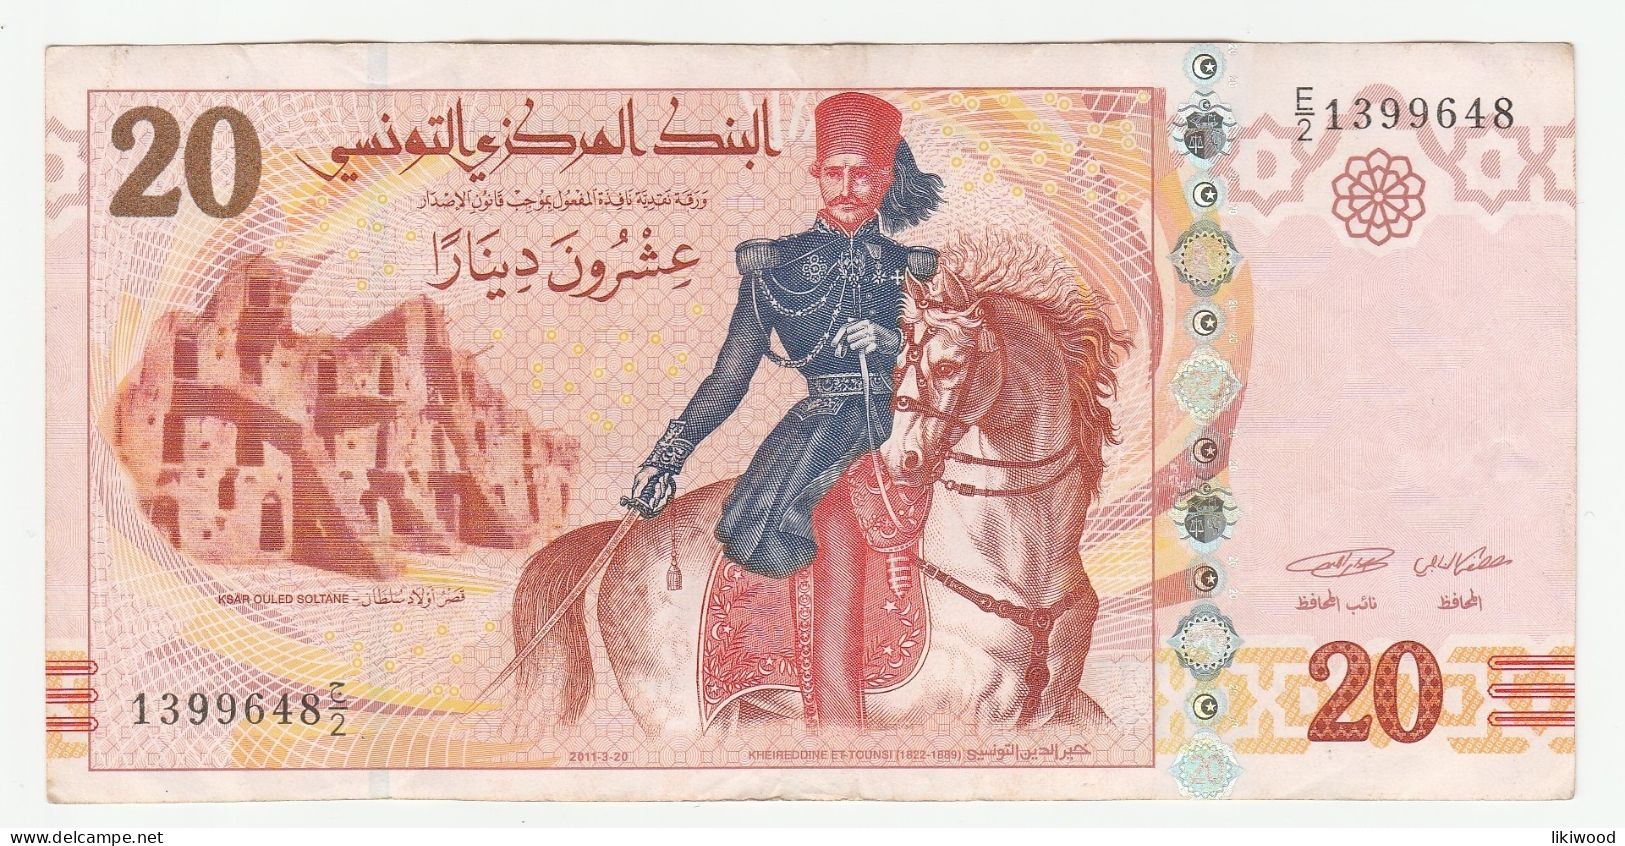 20 Dinars - 2011 - Tunisia - Khaireddine Et-Tounsi (1822-1889) Ksar Ouled Soltane - L'École Sadiki (error) - Tunisie